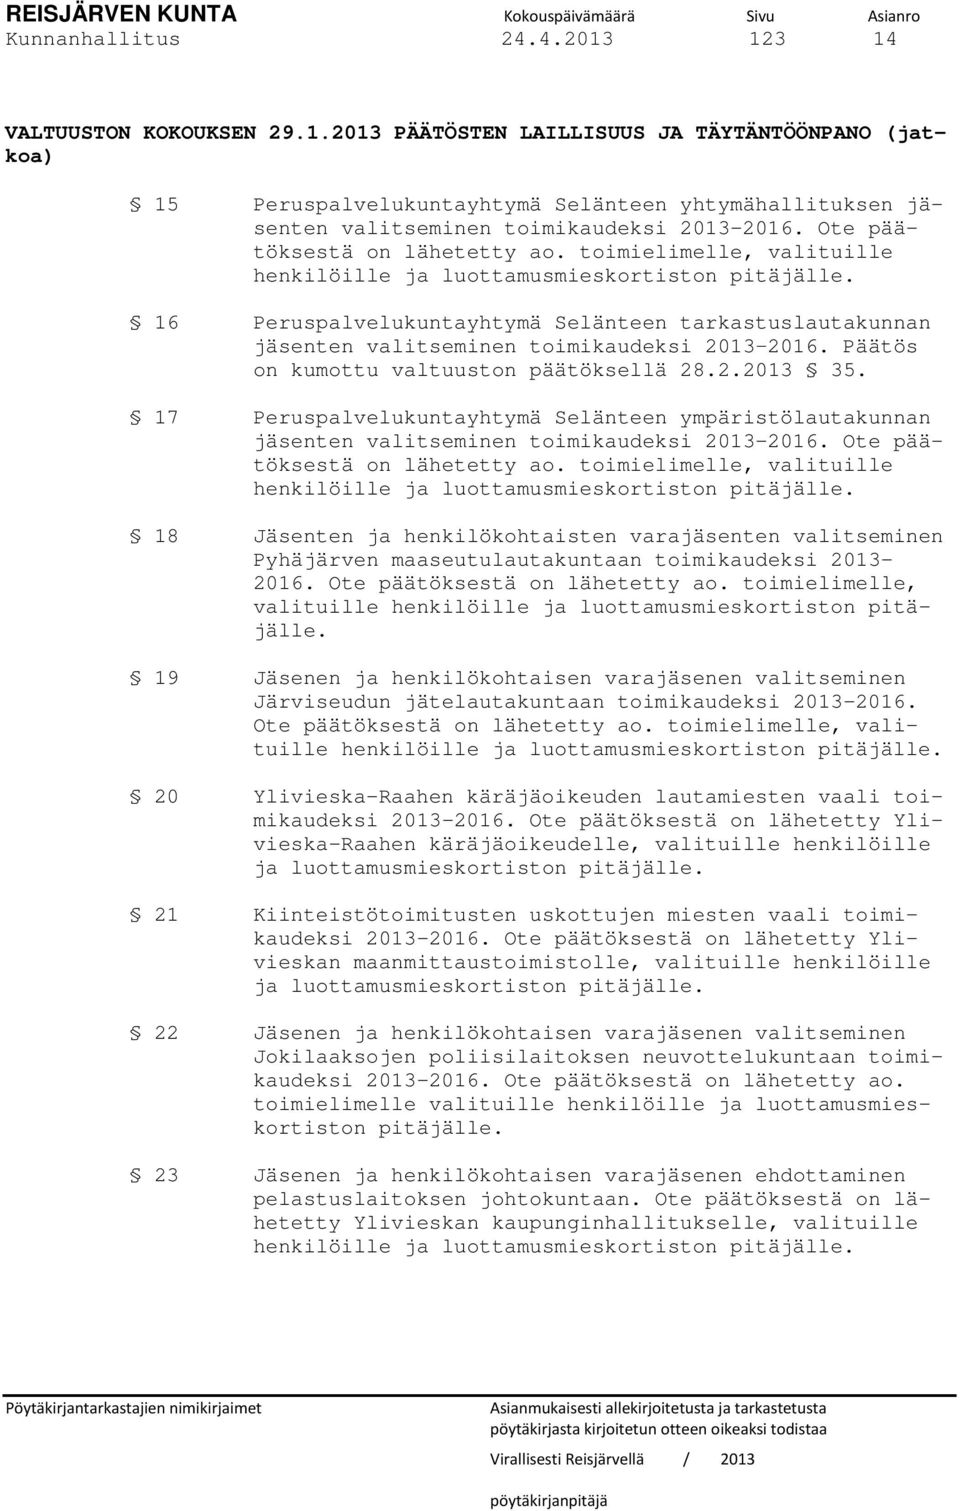 16 Peruspalvelukuntayhtymä Selänteen tarkastuslautakunnan jäsenten valitseminen toimikaudeksi 2013 2016. Päätös on kumottu valtuuston päätöksellä 28.2.2013 35.